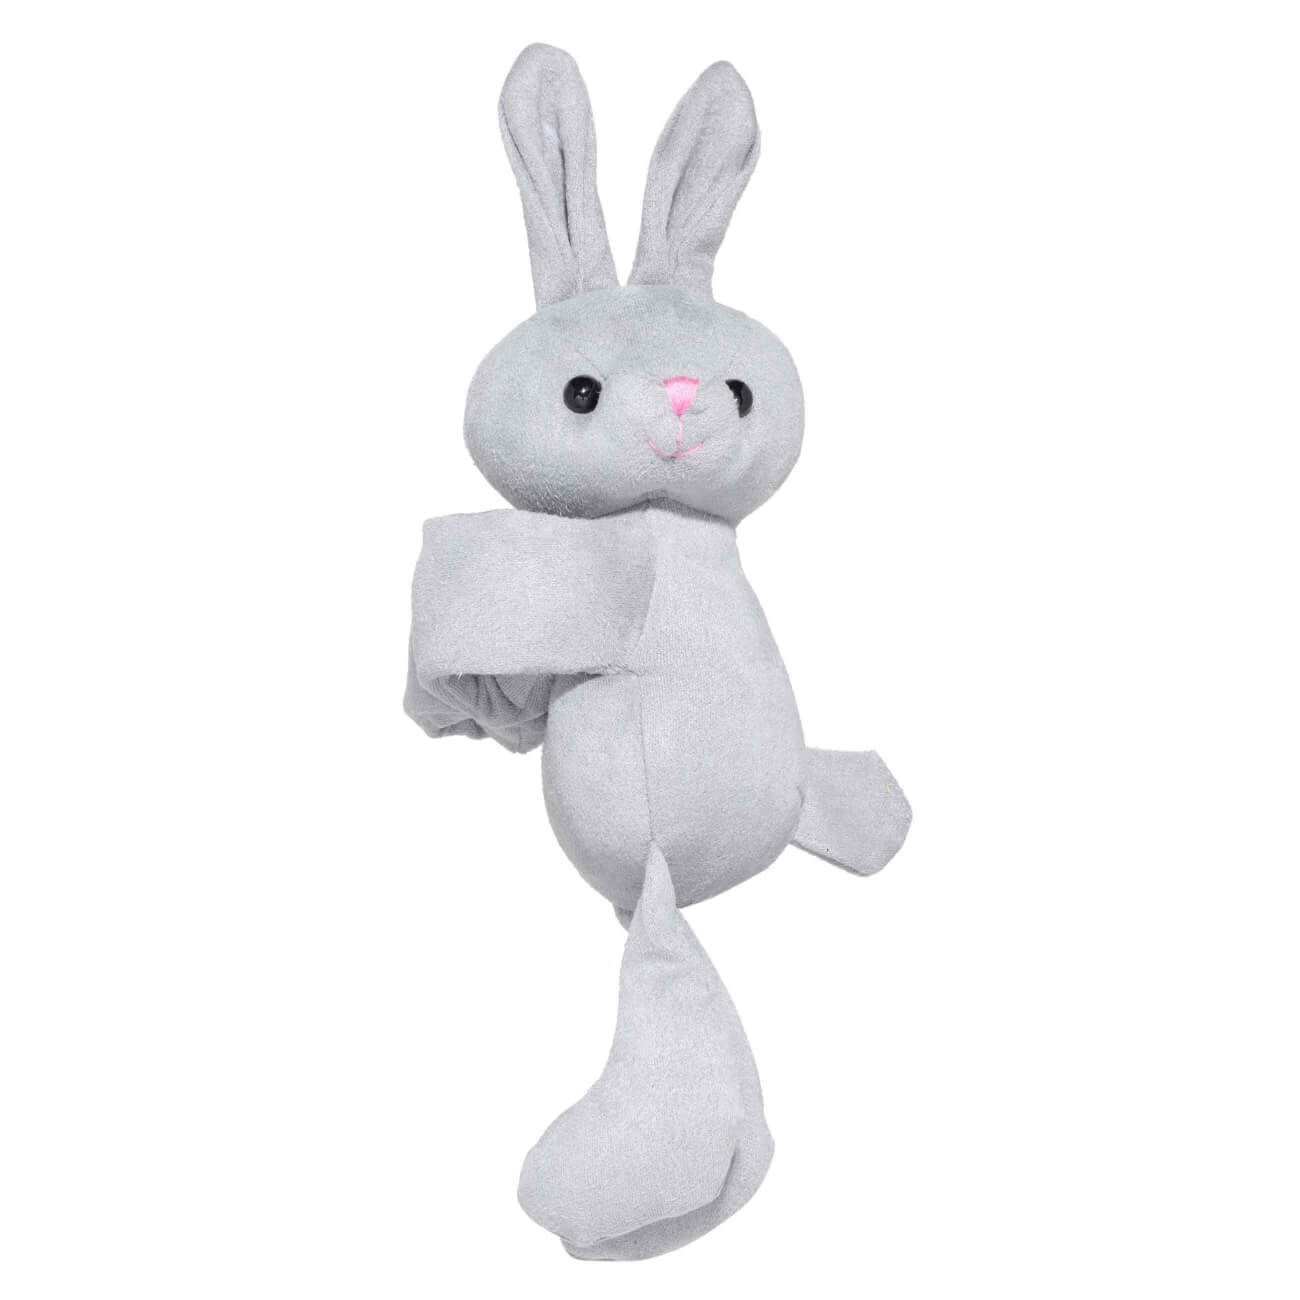 игрушка антистресс 9 см полиуретан серая заяц rabbit Игрушка-браслет, 21х32 см, мягкая, полиэстер, серая, Заяц, Rabbit